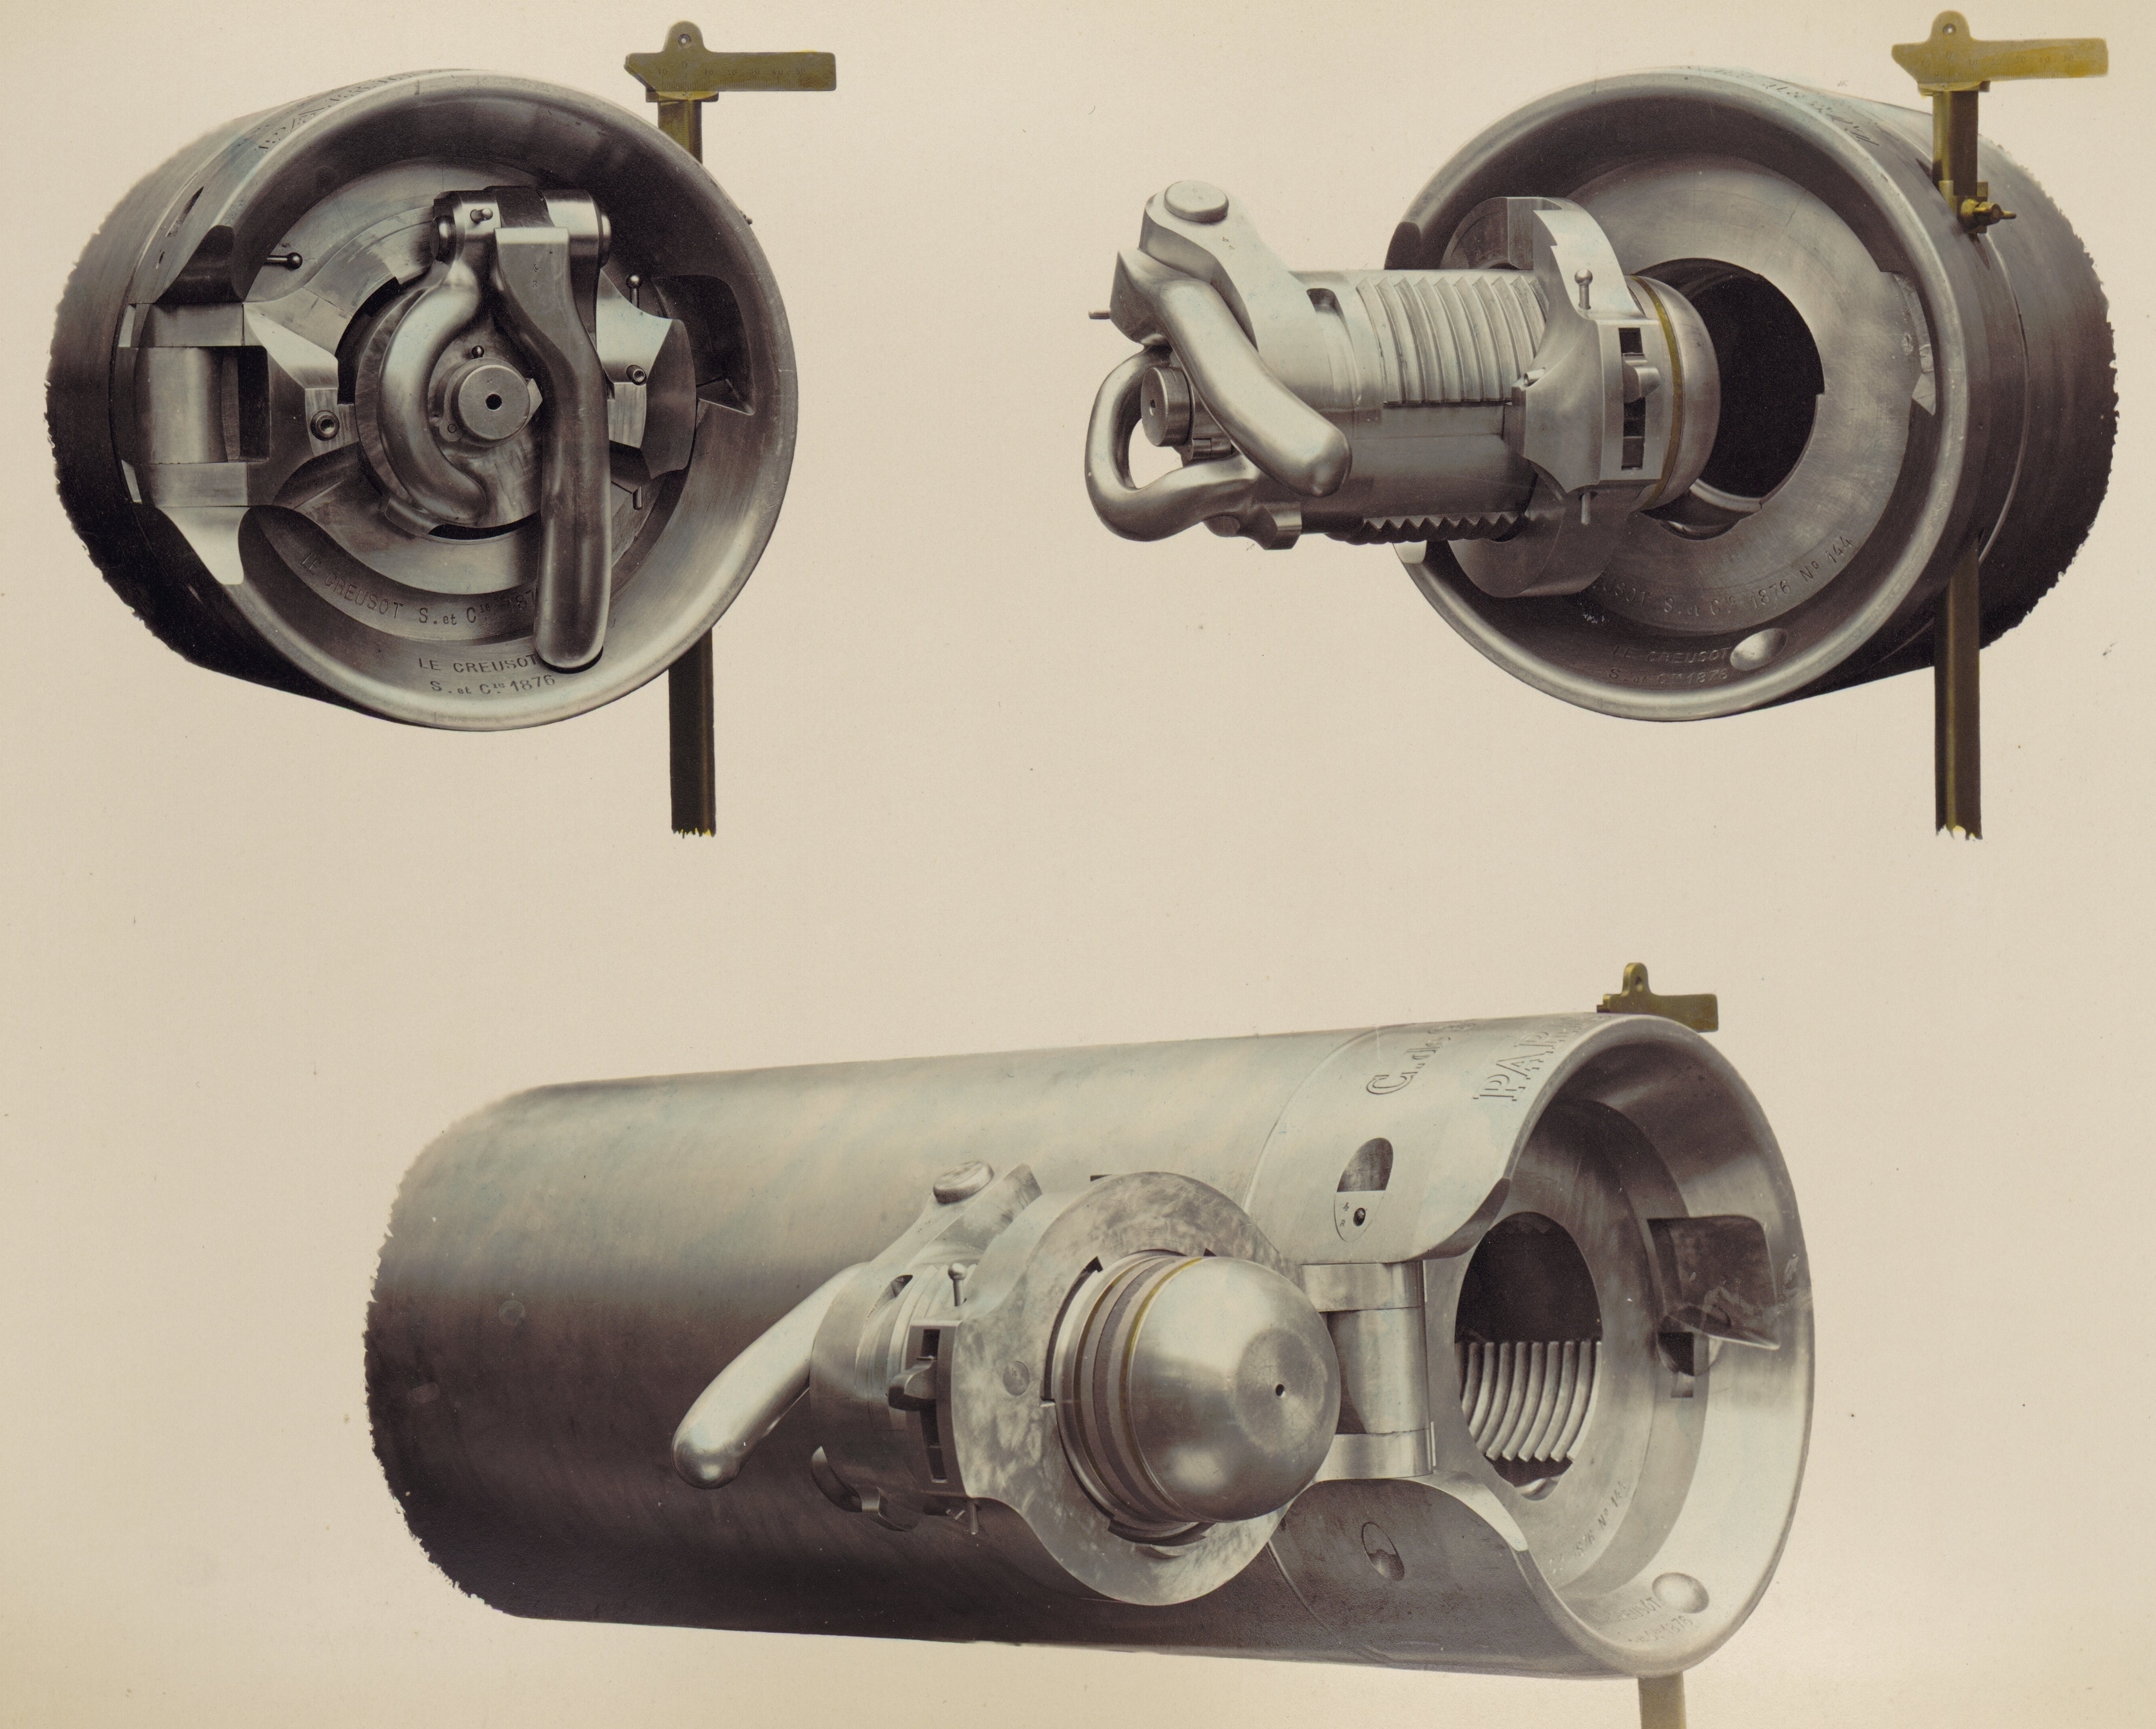 De Bange 90 mm cannon (Mle 1877)